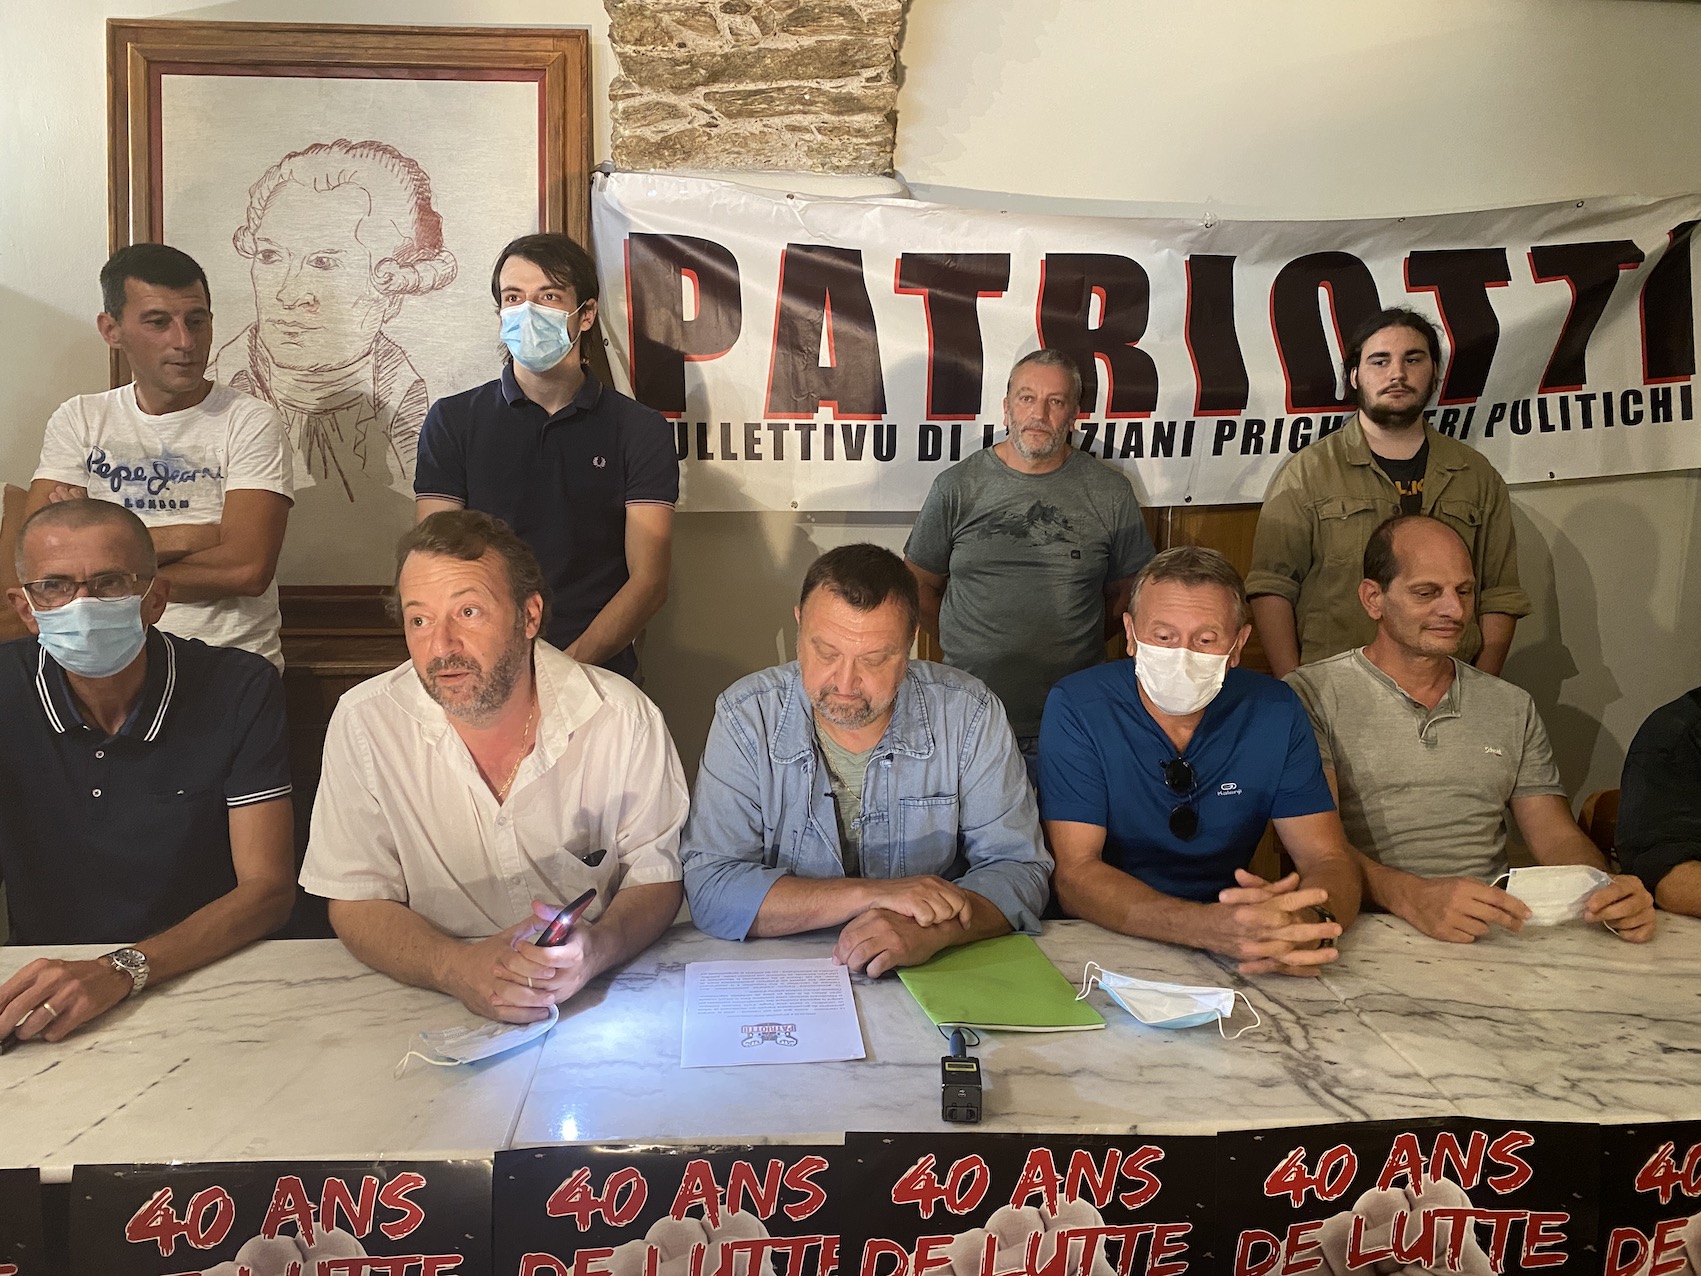 Le collectif Patriotti demande à être reçu par le nouveau ministre de la Justice Dupond-Moretti